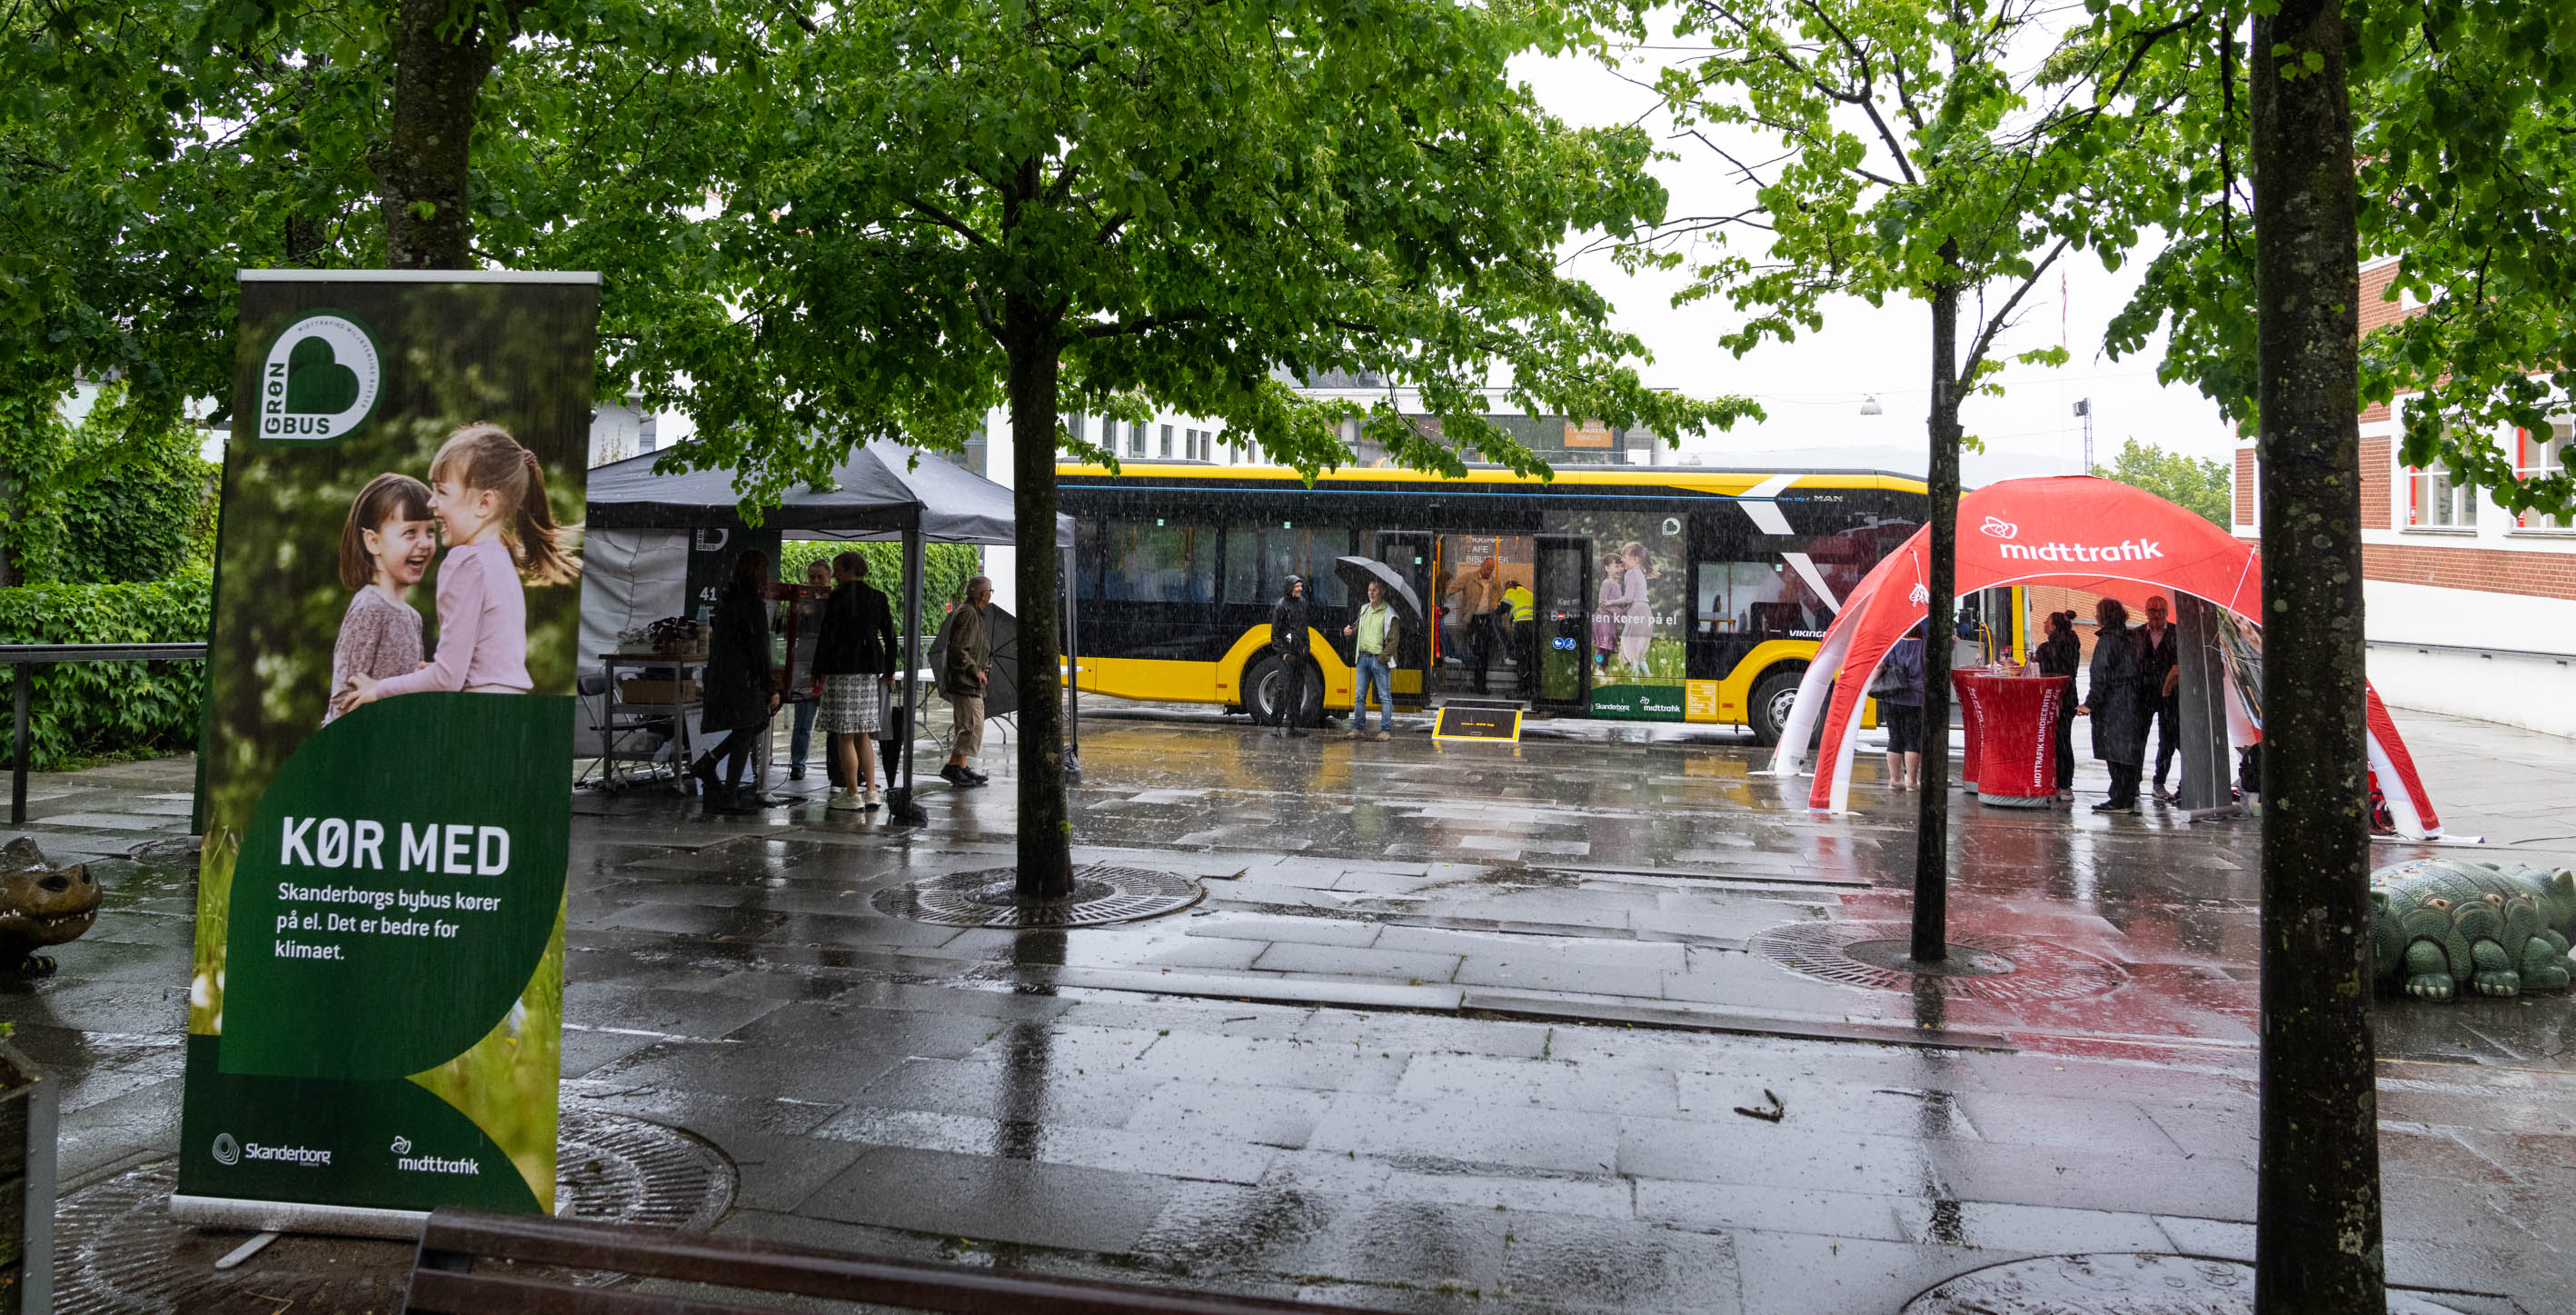 Midttrafik Mobile Kundecenter i Skanderborg